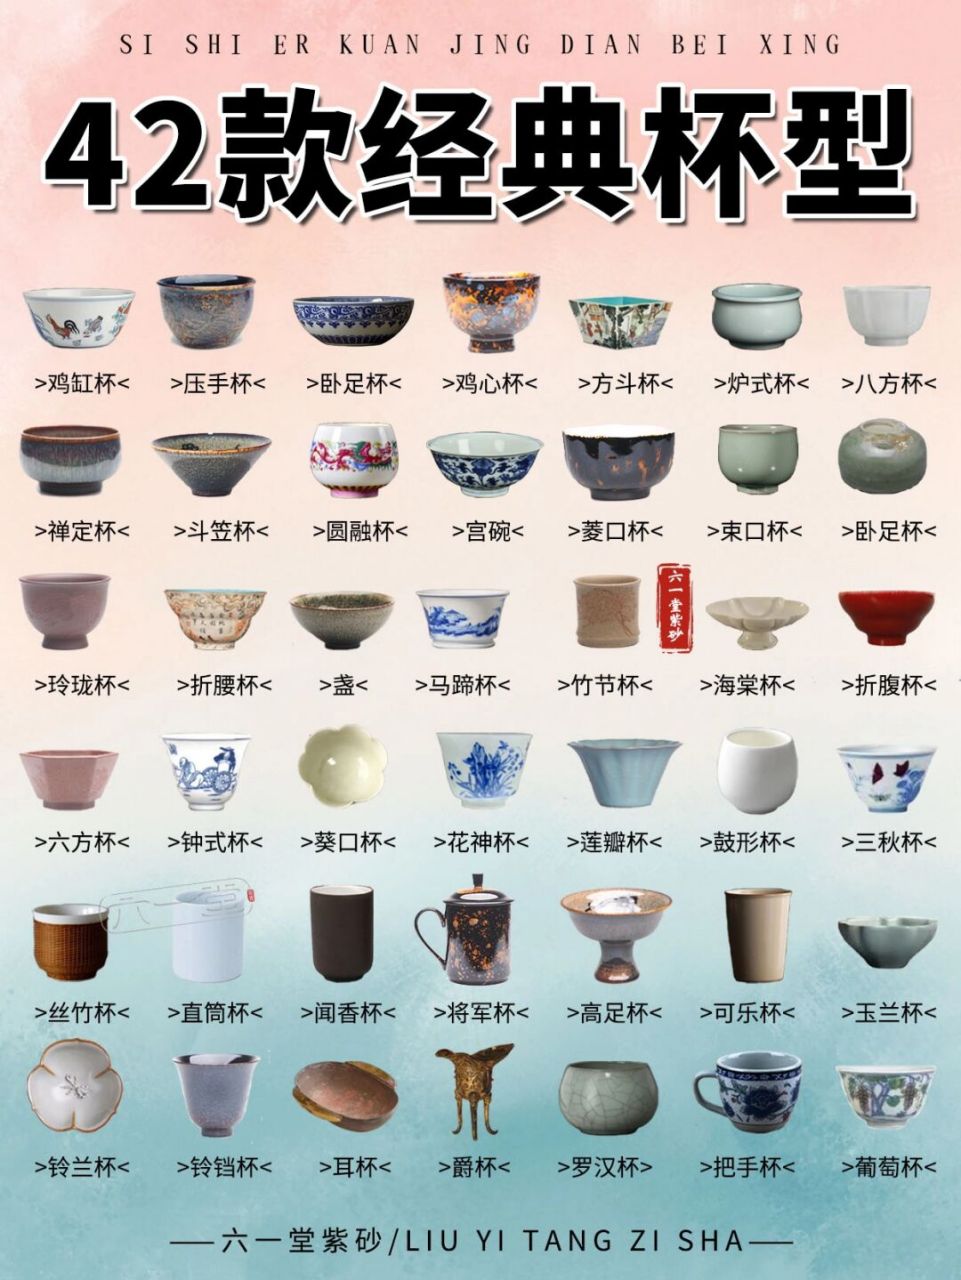 茶具杯子名称图片